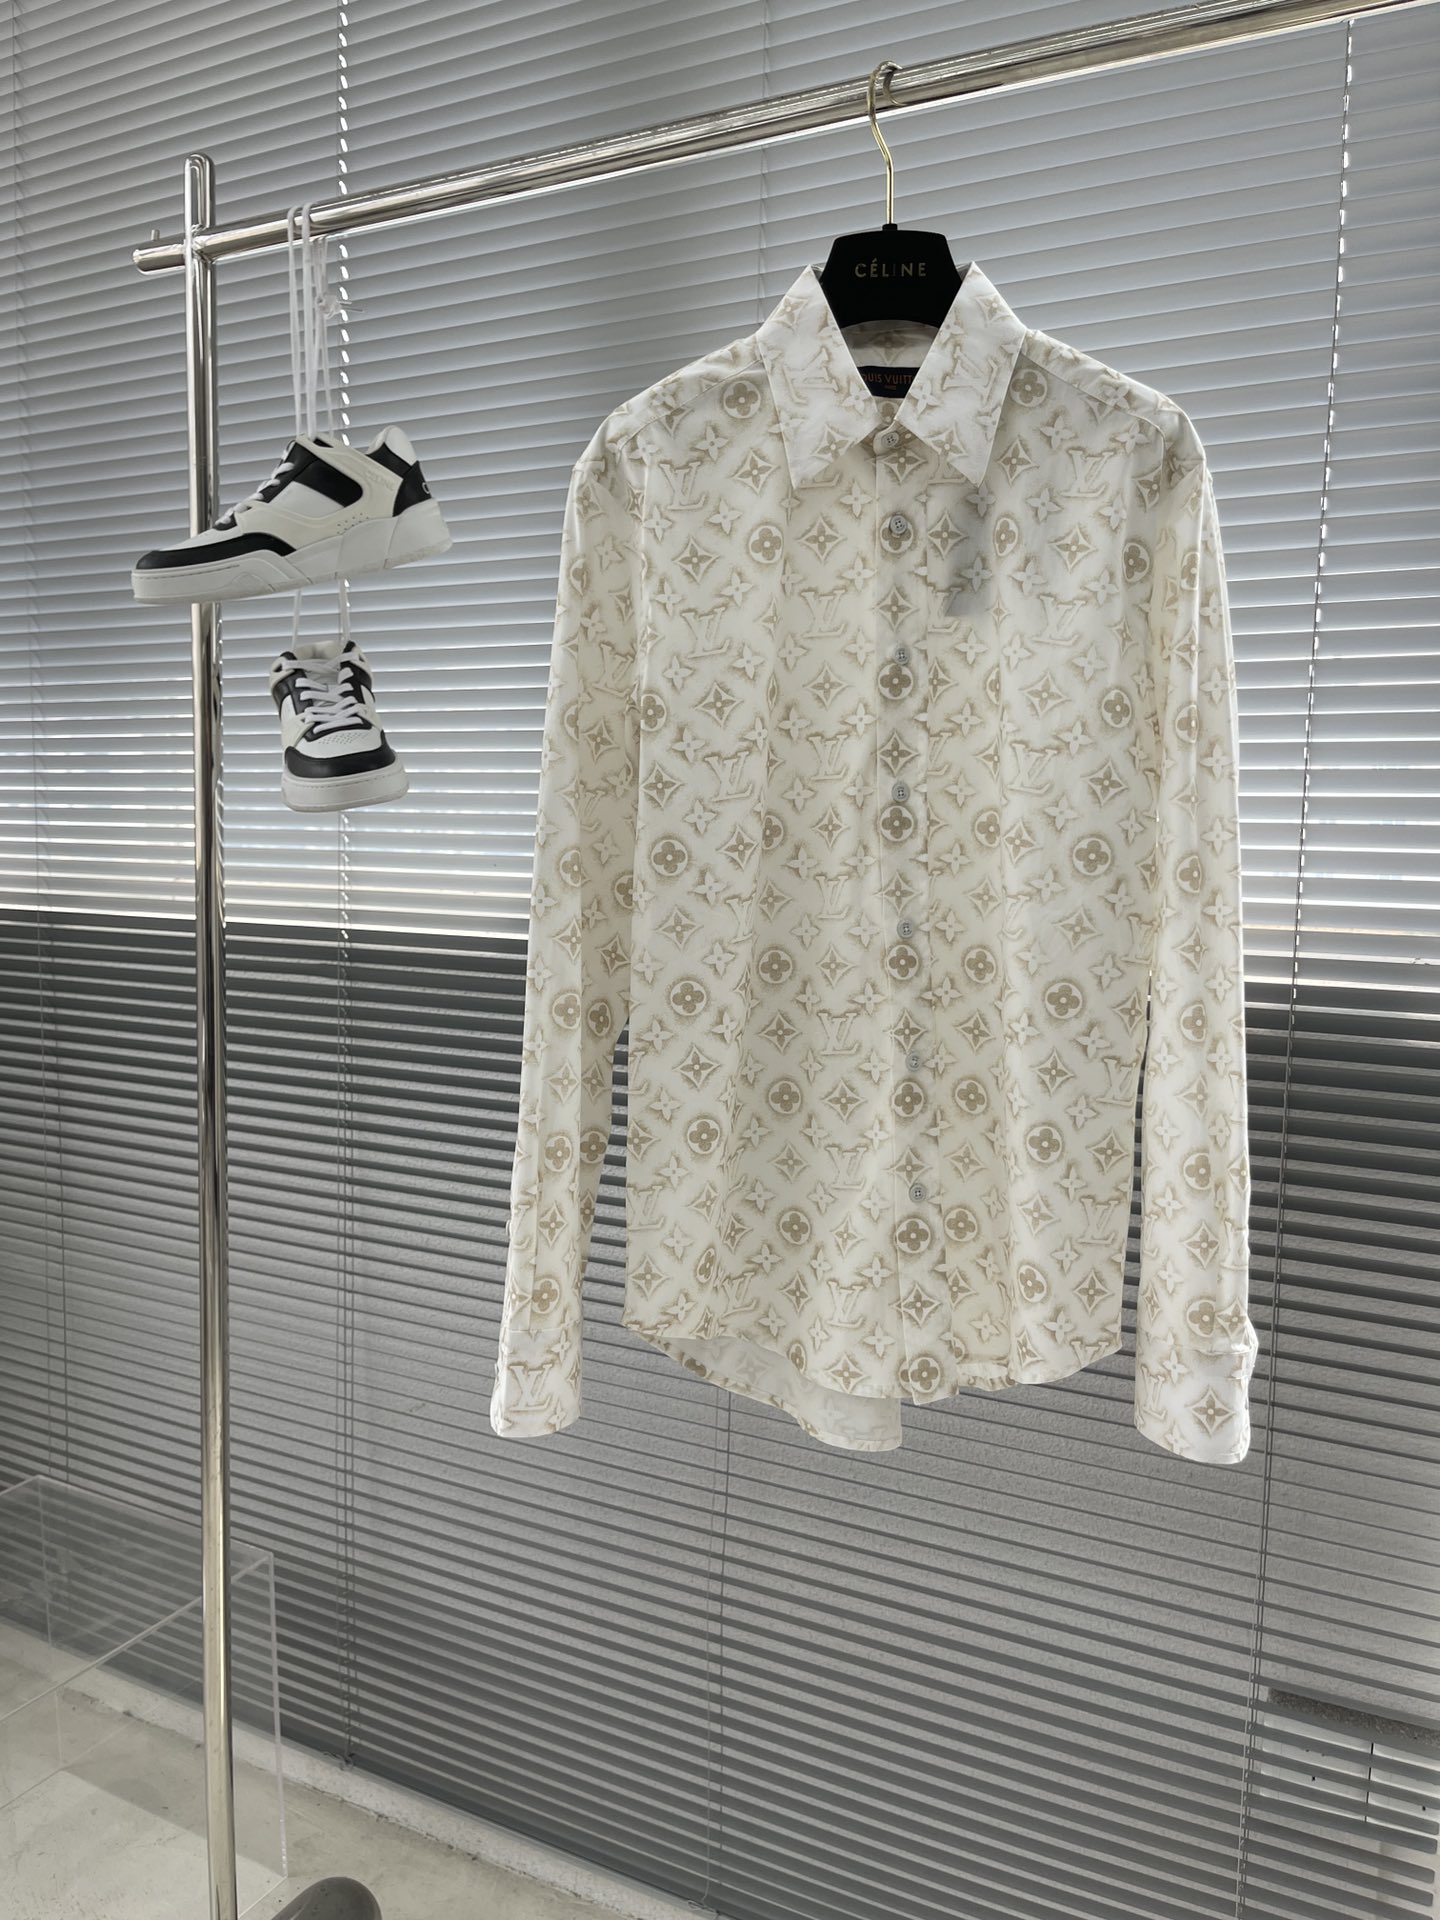 لويس فيتون ملابس قمصان & البلوزات مصمم جديد نسخة طبق الأصل
 العام للرجال والنساء قطن كم طويل